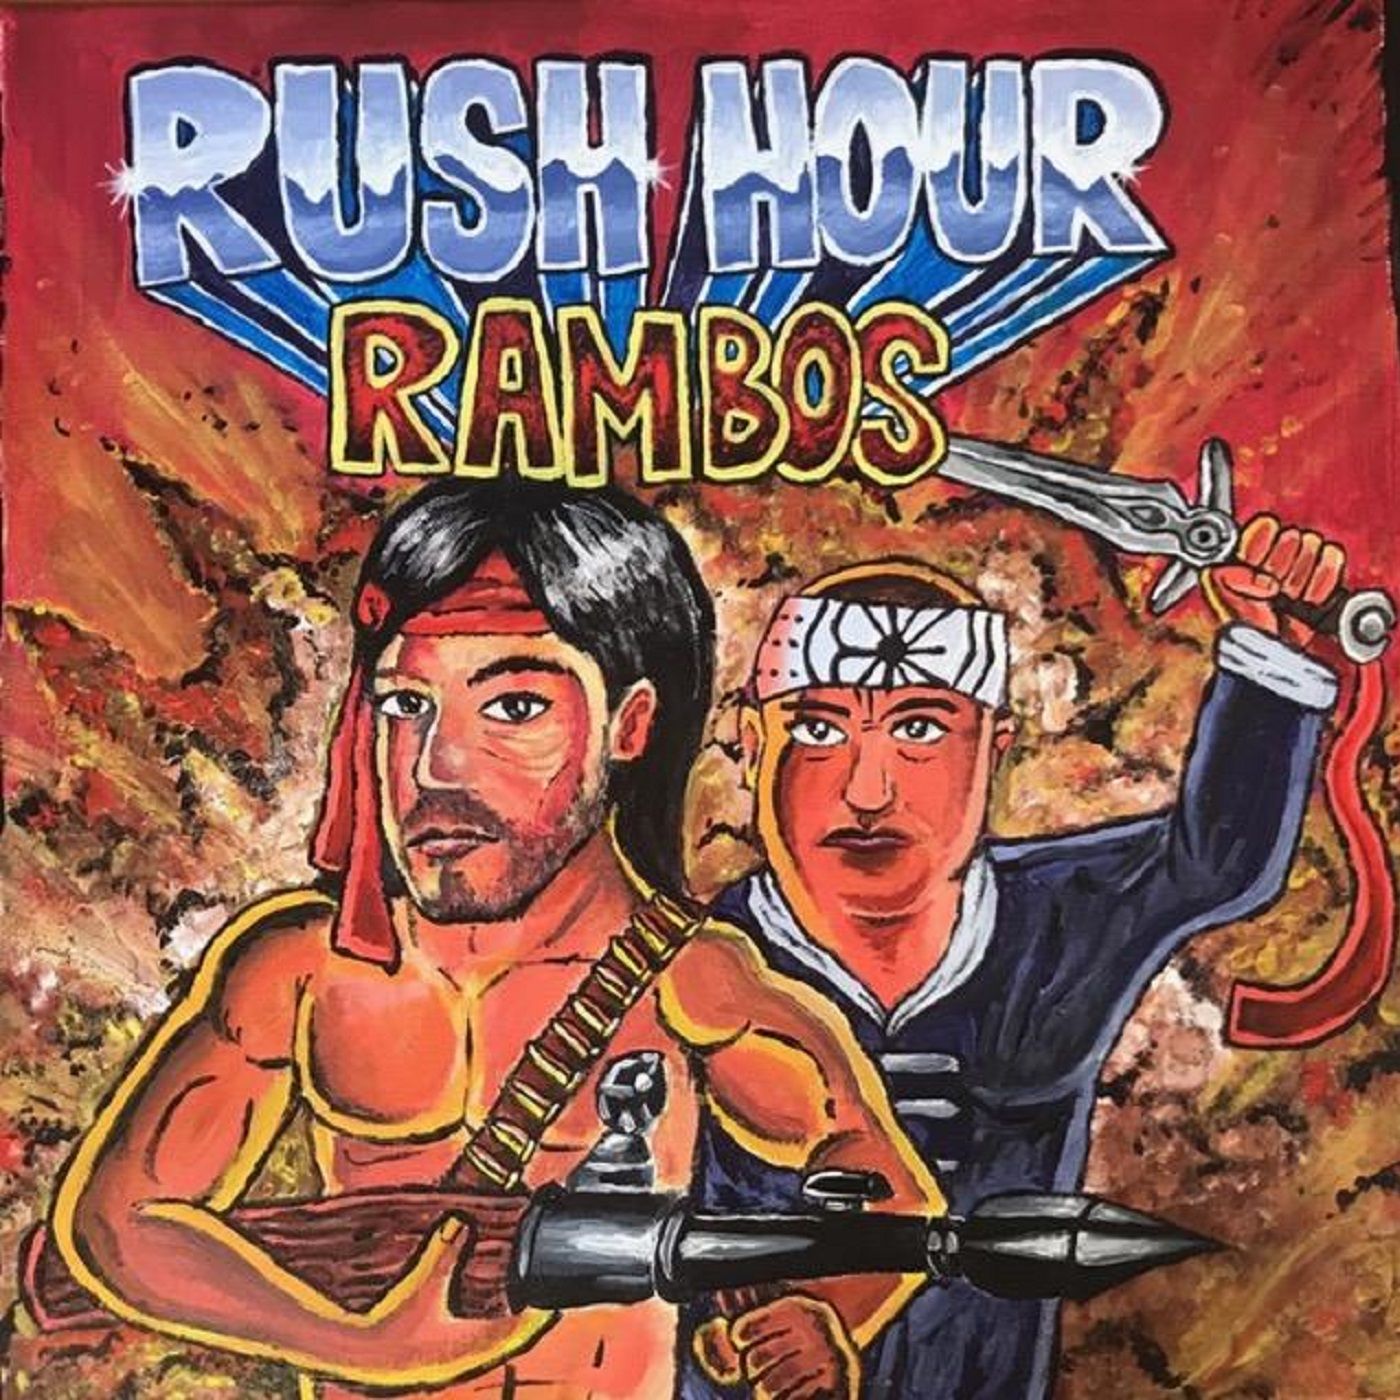 Rush Hour Rambos